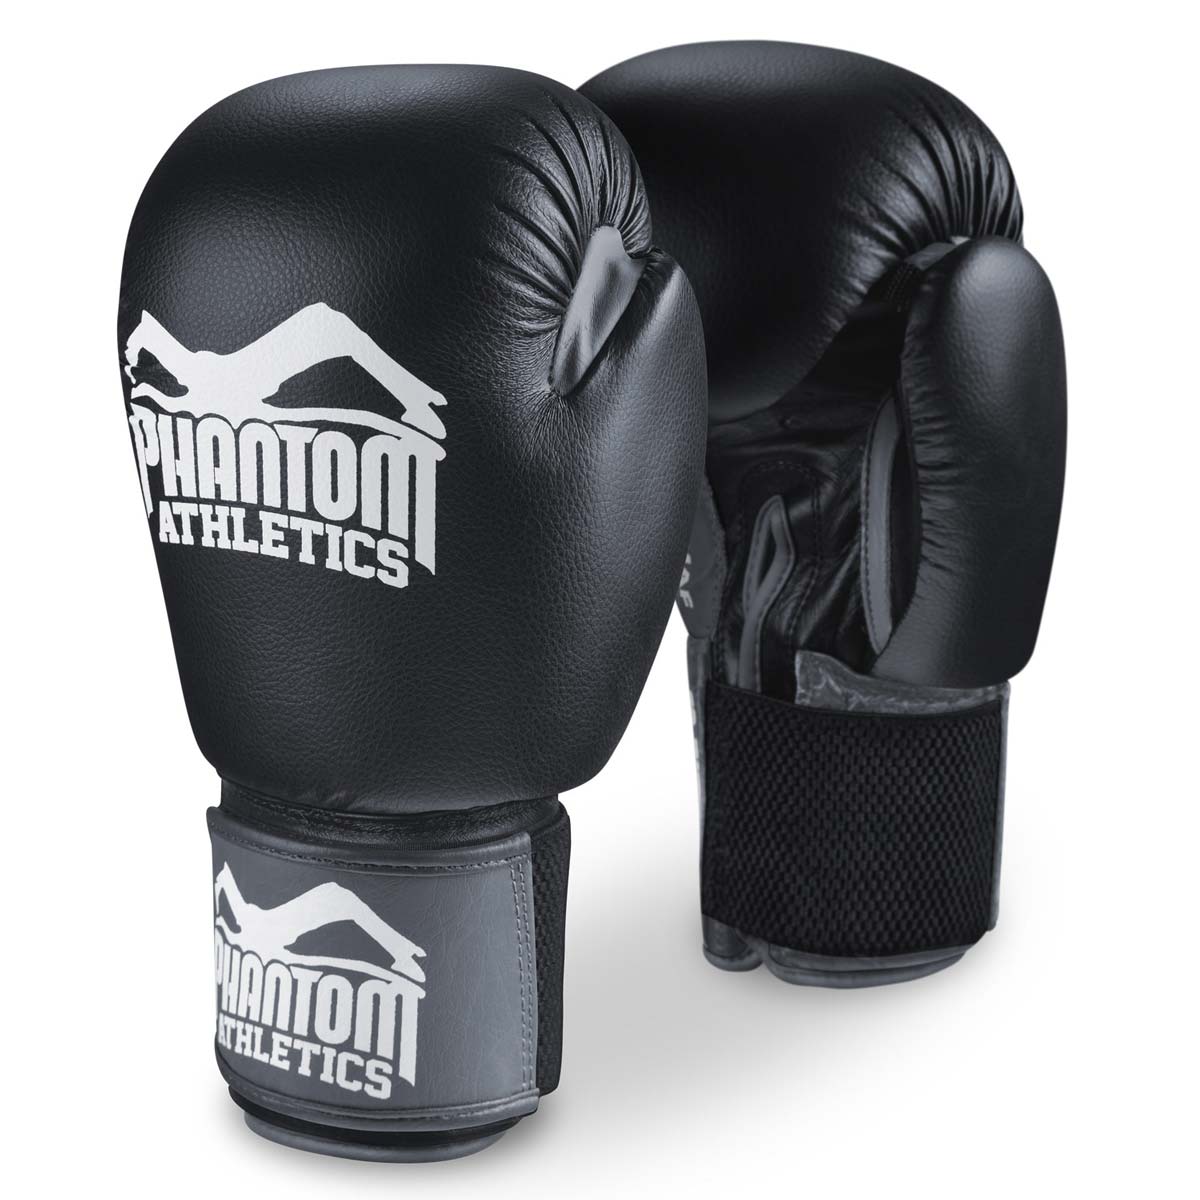 De Phantom Ultra bokshandschoenen voor training, sparring en competitie.